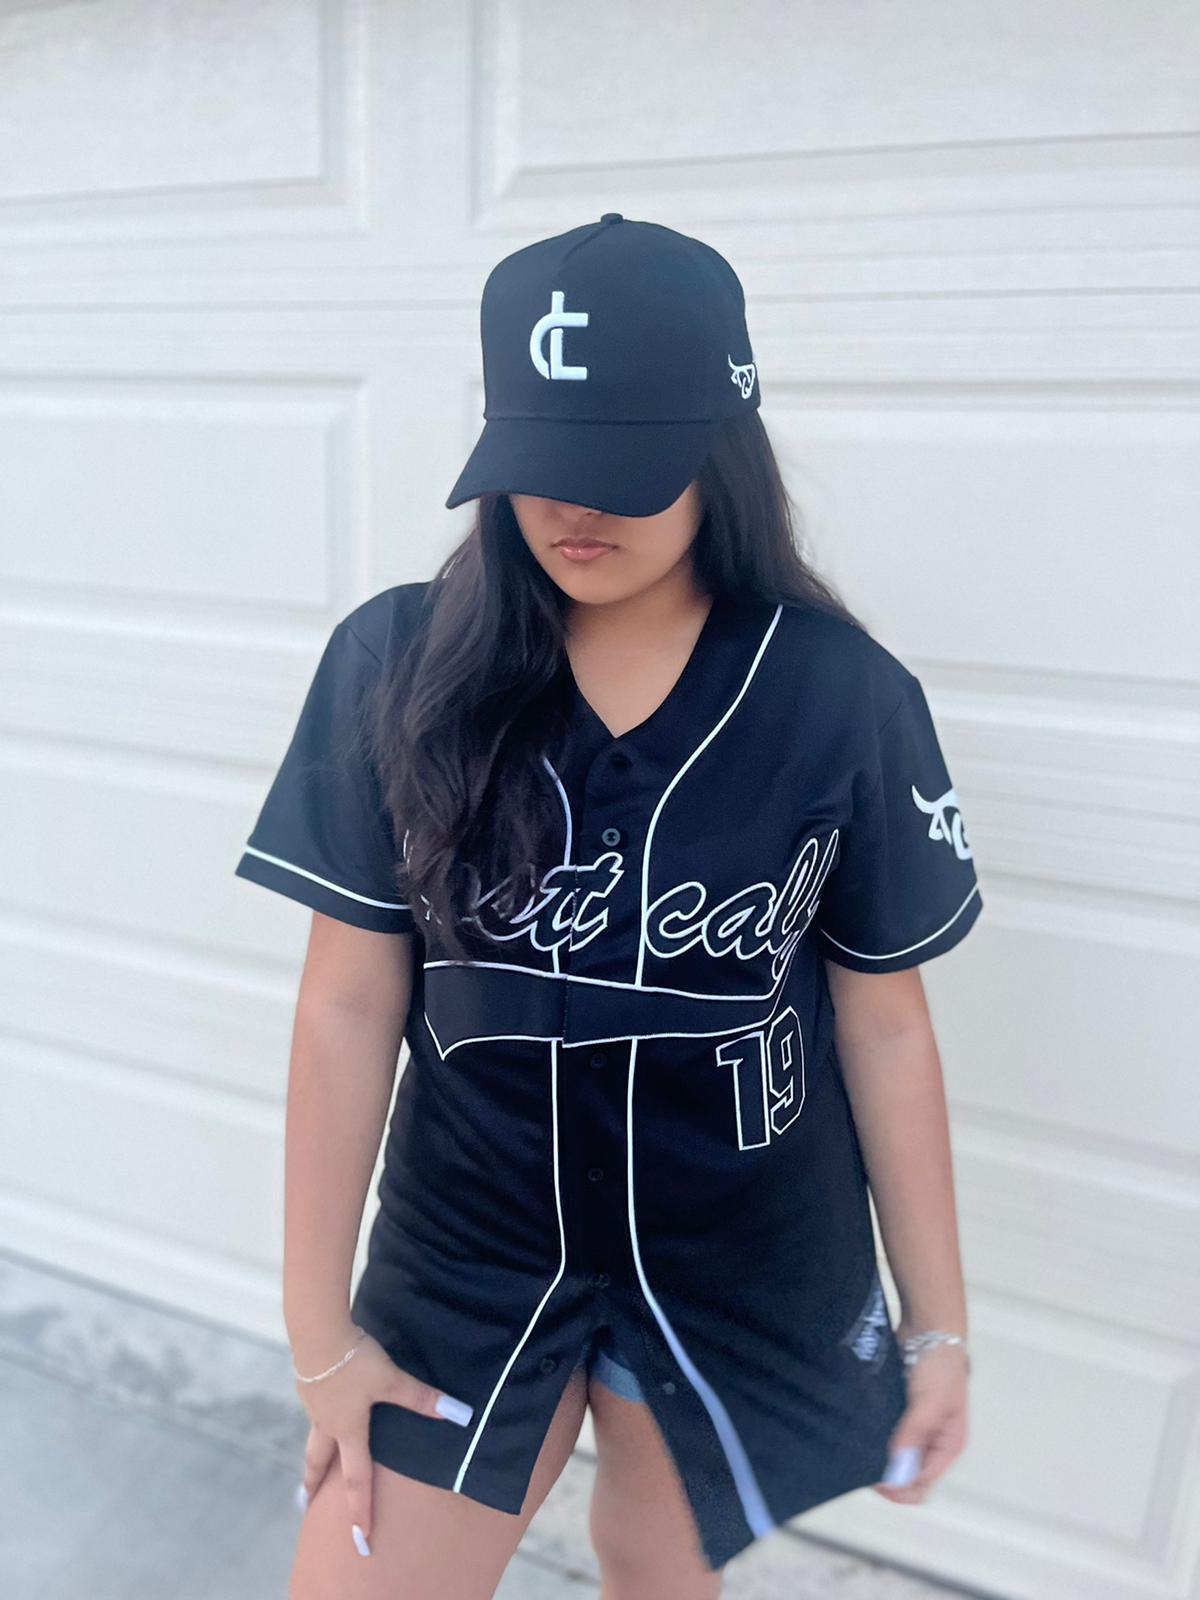 Baseball-jersey fashion